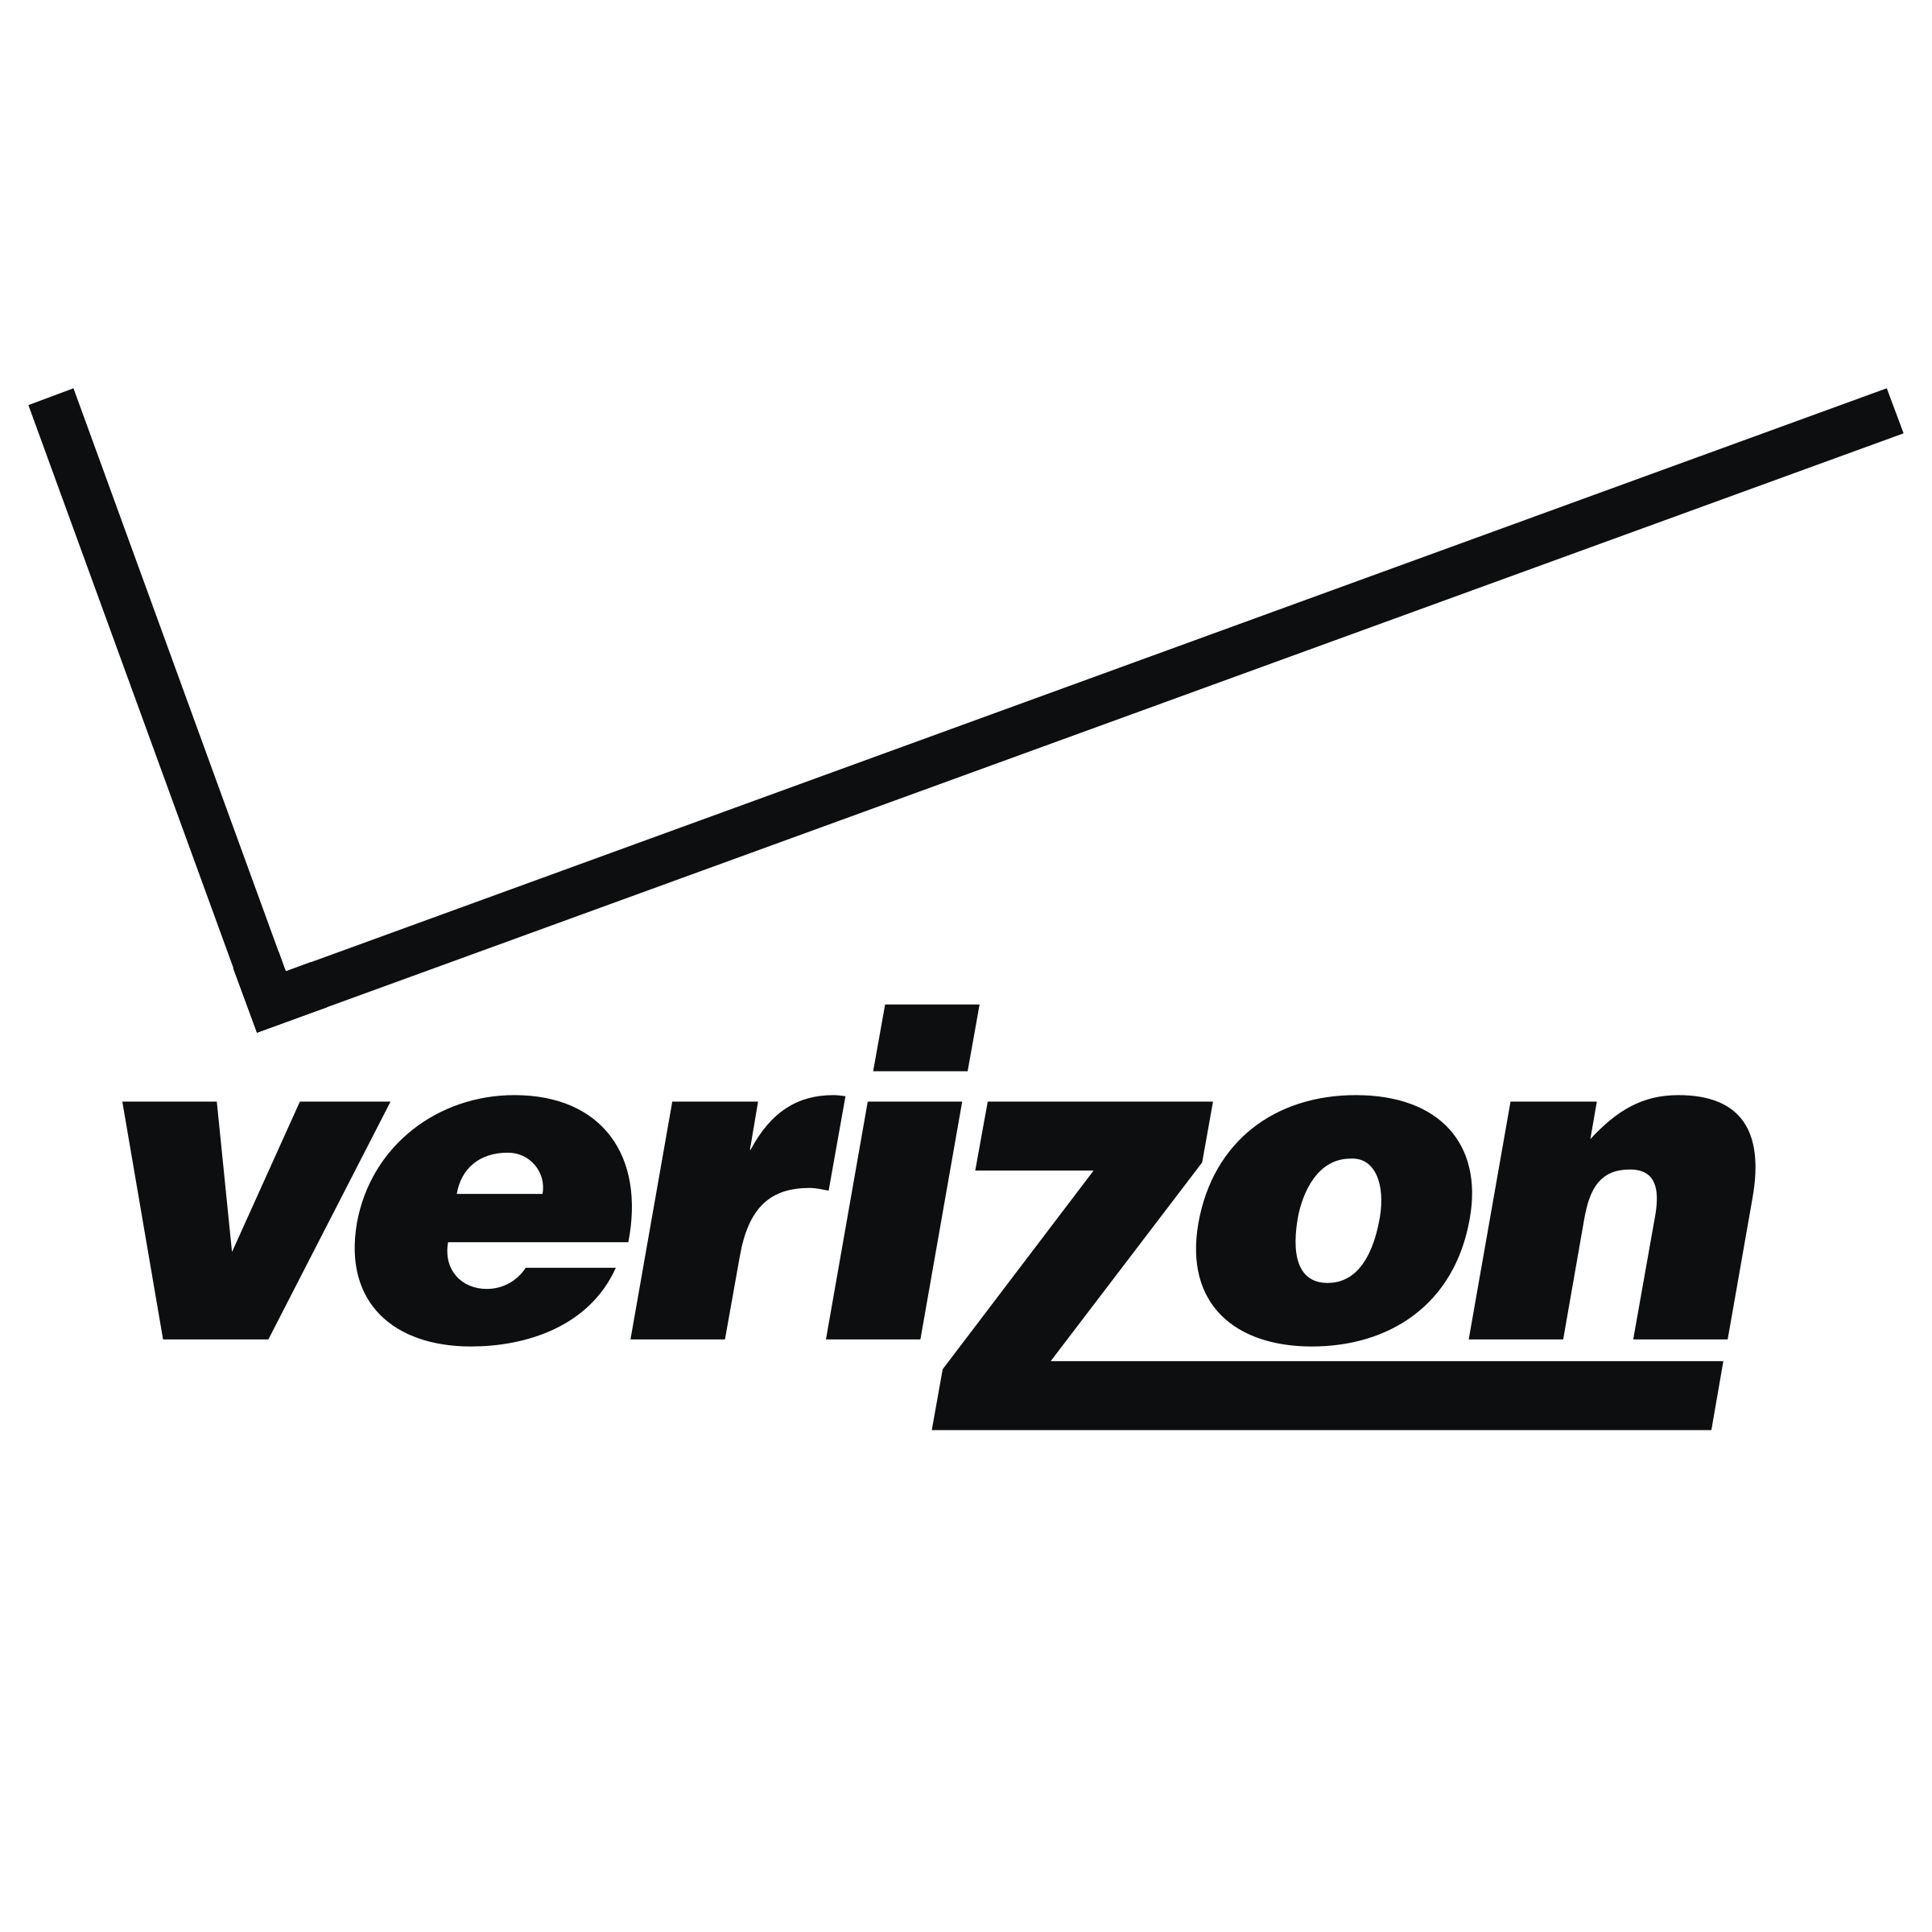 verizon-2-logo-png-transparent-3135269442.png